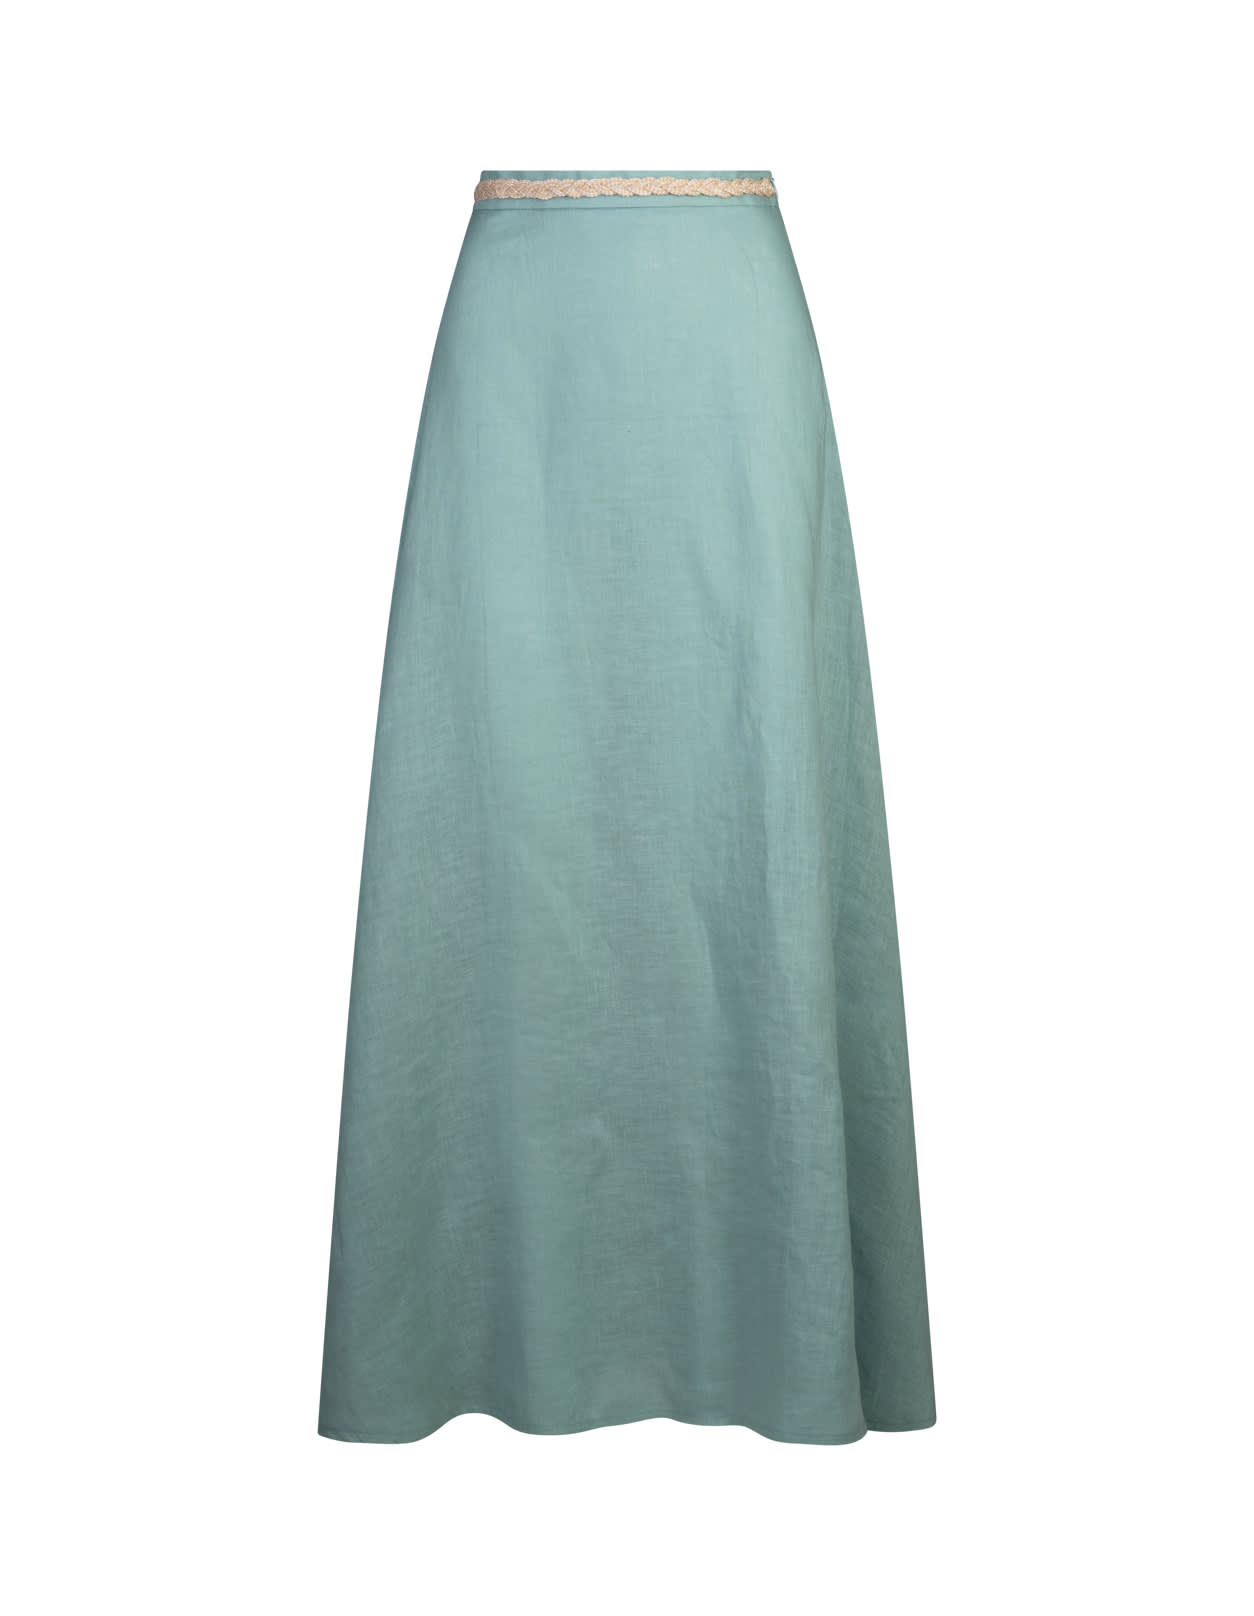 Charline Long Skirt In Light Blue Linen